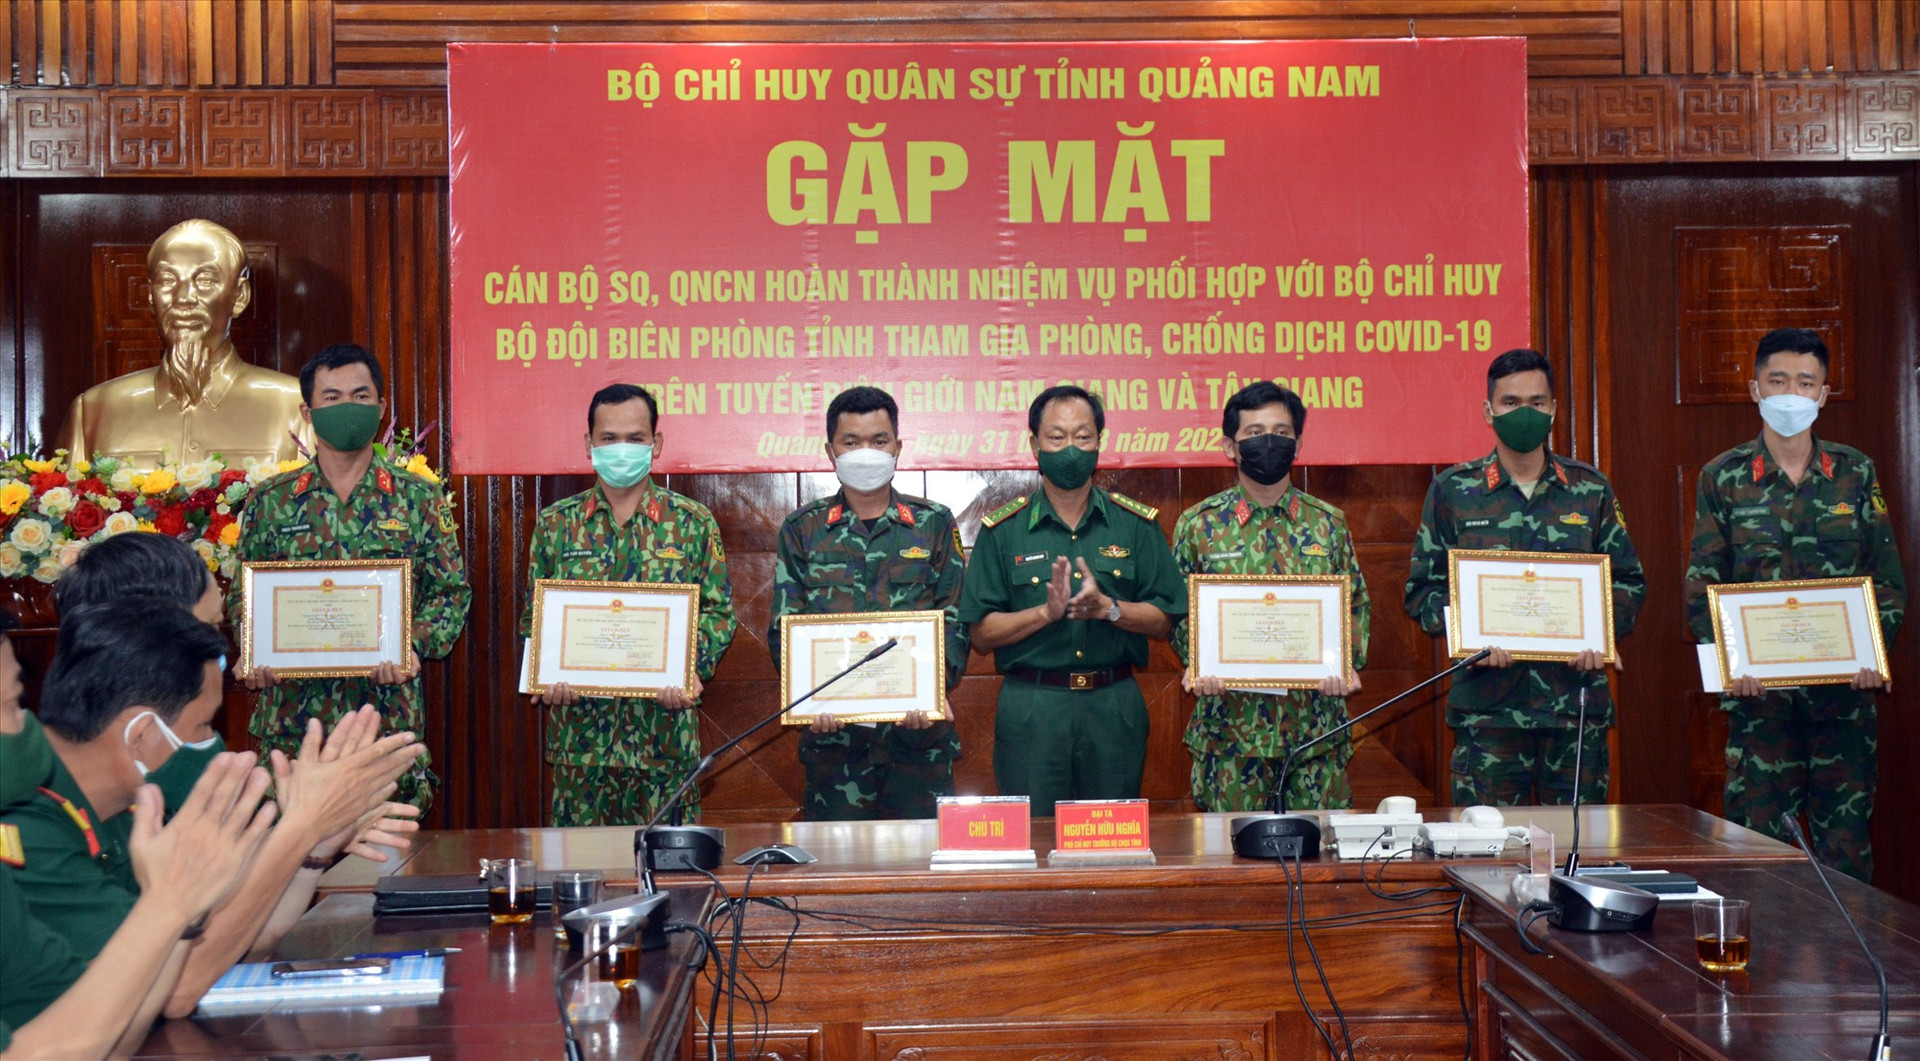 Anh gap mat: Lãnh đạo Bộ chỉ huy BĐBP tỉnh khen thưởng cho 06 cá nhân có thành tích xuất sắc trong công tác phối hợp phòng chống Covid-19 trên tuyến biên giới.